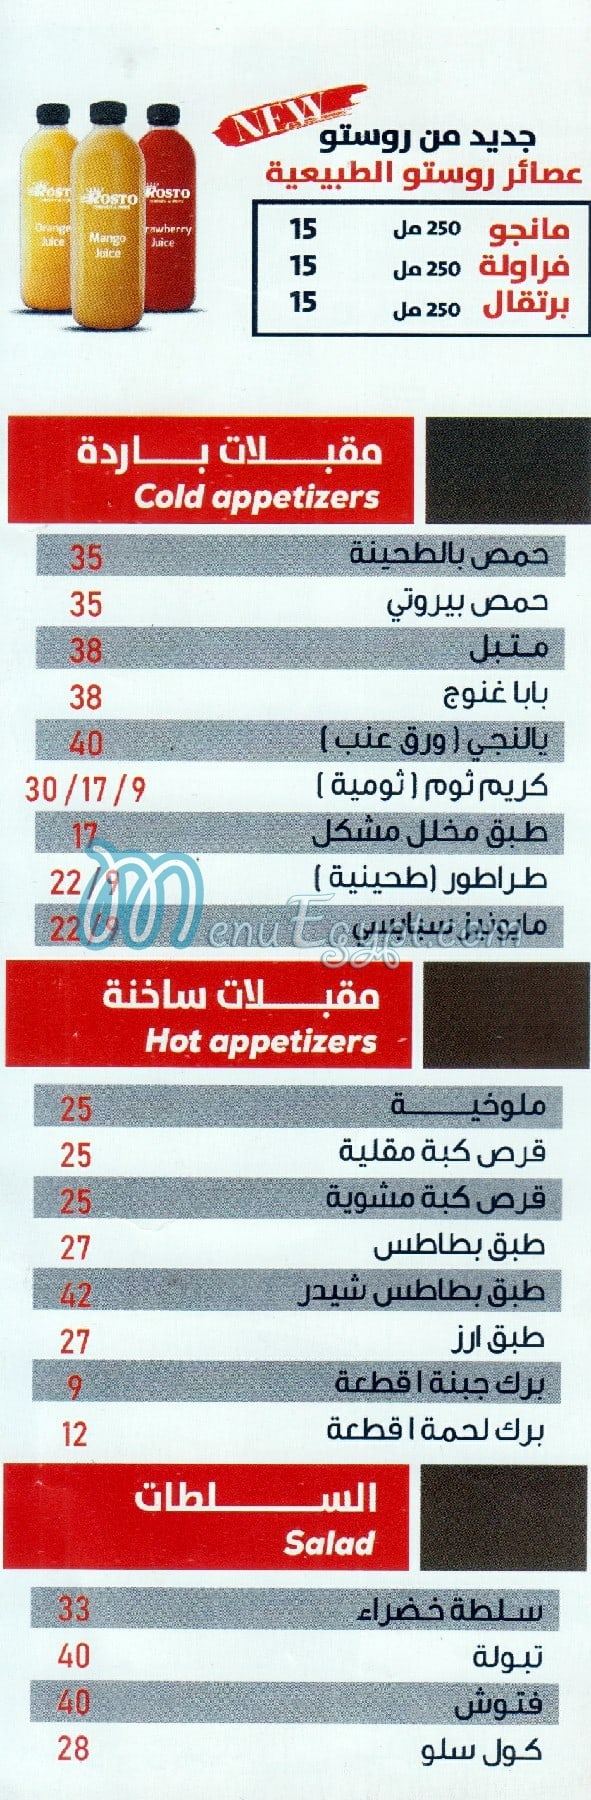 Rosto El Sheikh Zayed menu Egypt 6